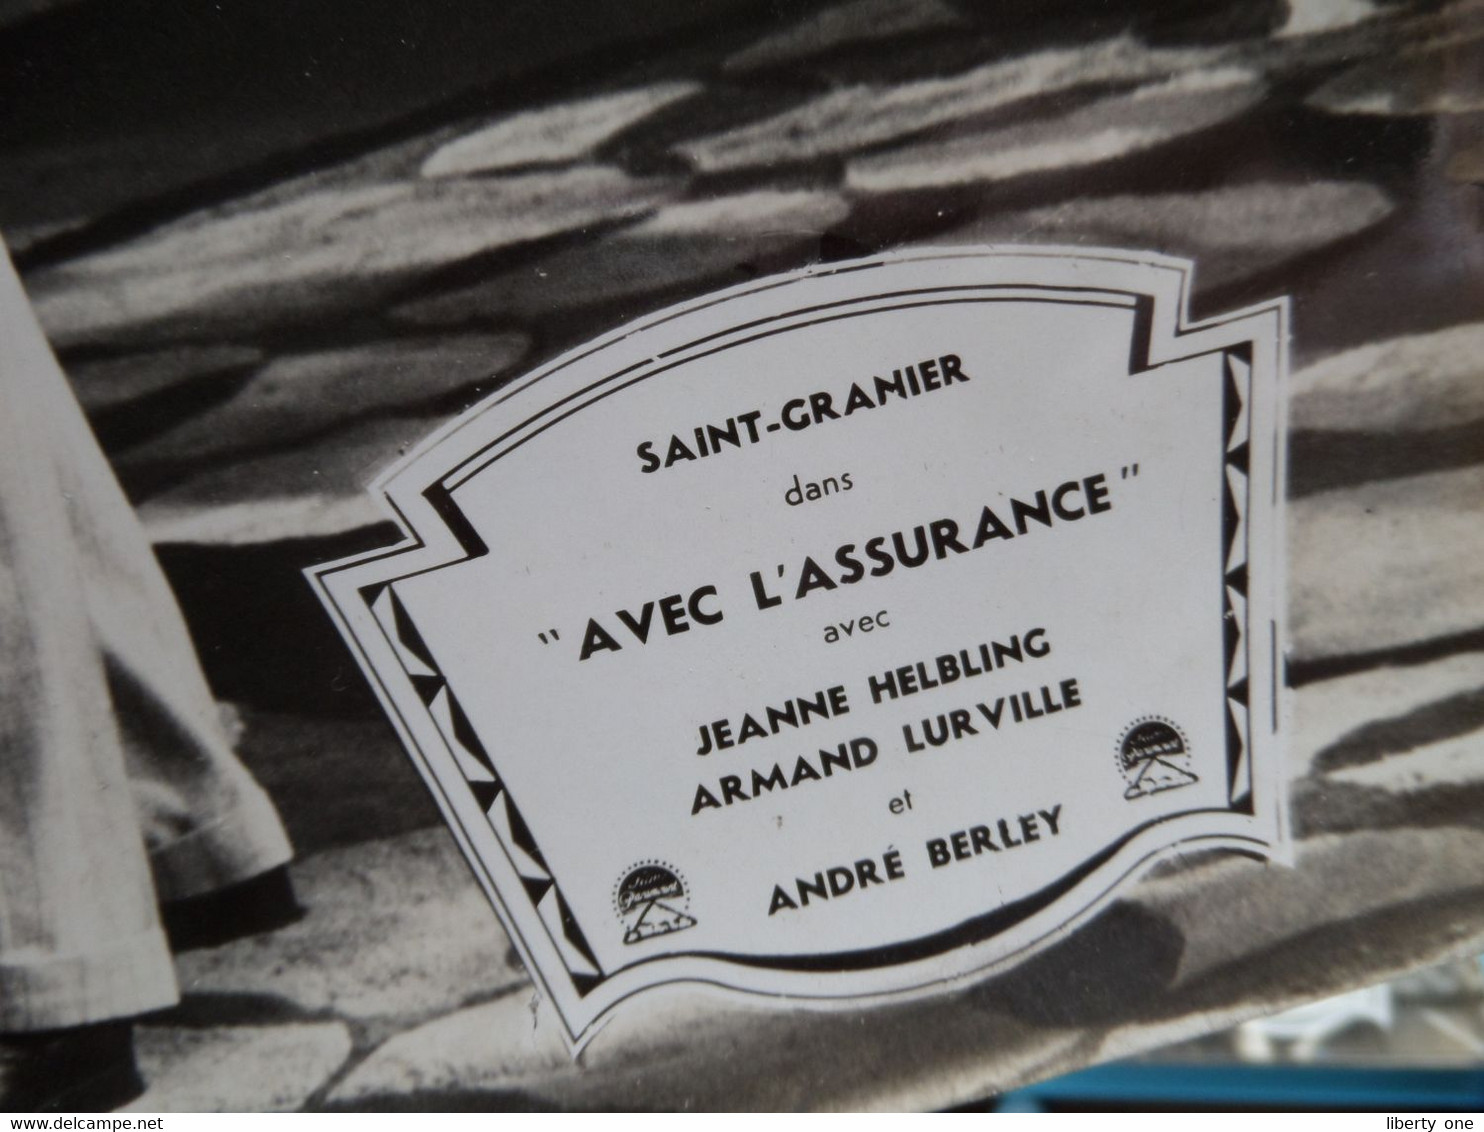 Saint-Granier Dans " AVEC L'ASSURANCE " Jeanne Helbling, Armand Lurville Et André Berley ( Photo Size 30 X 45 Cm.)! - Photos